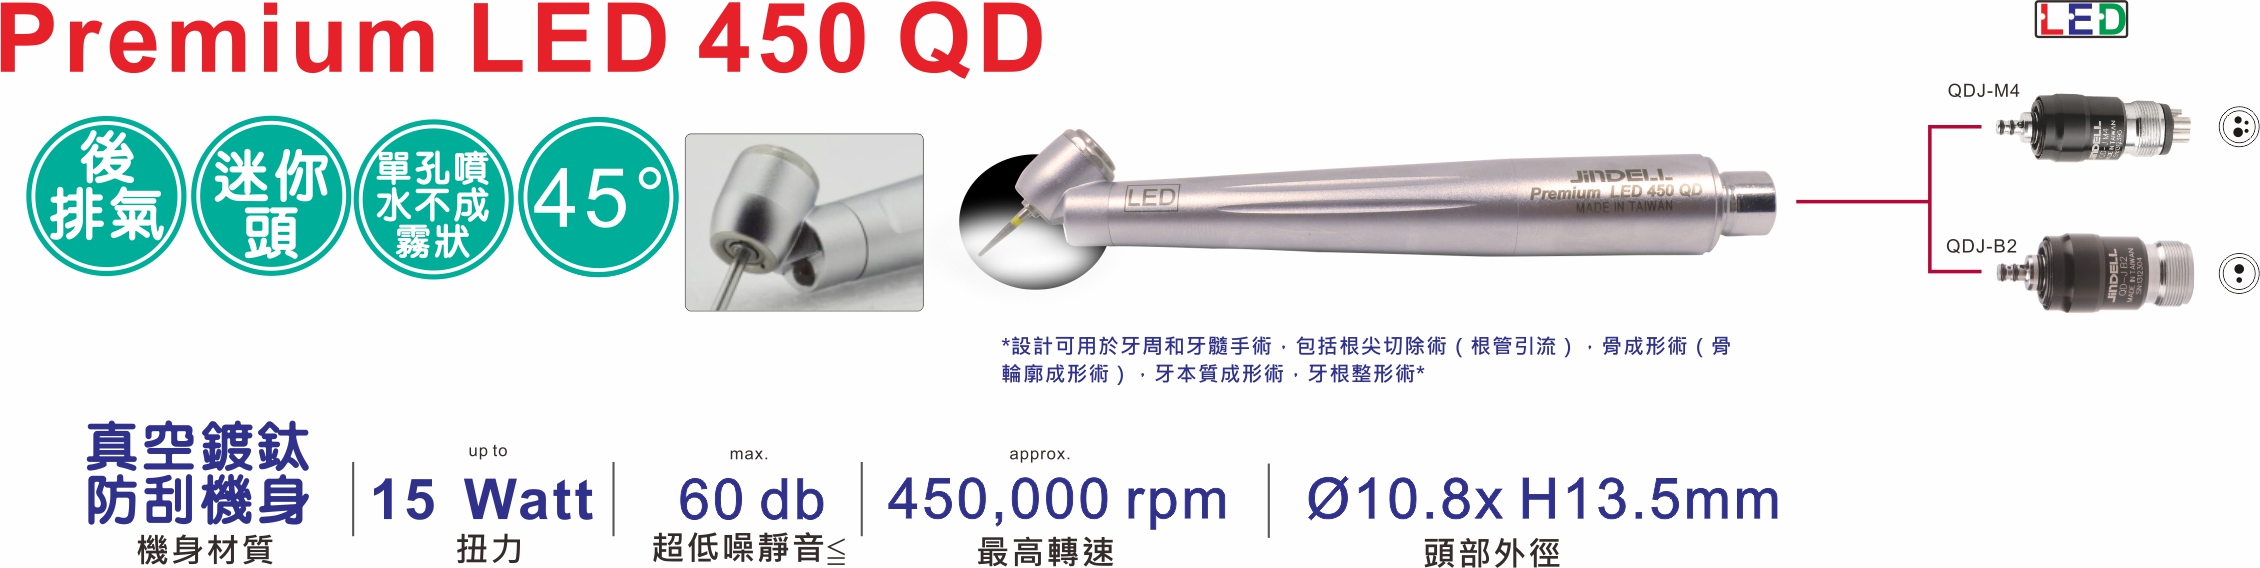 Premium LED 450 QD 中文特點